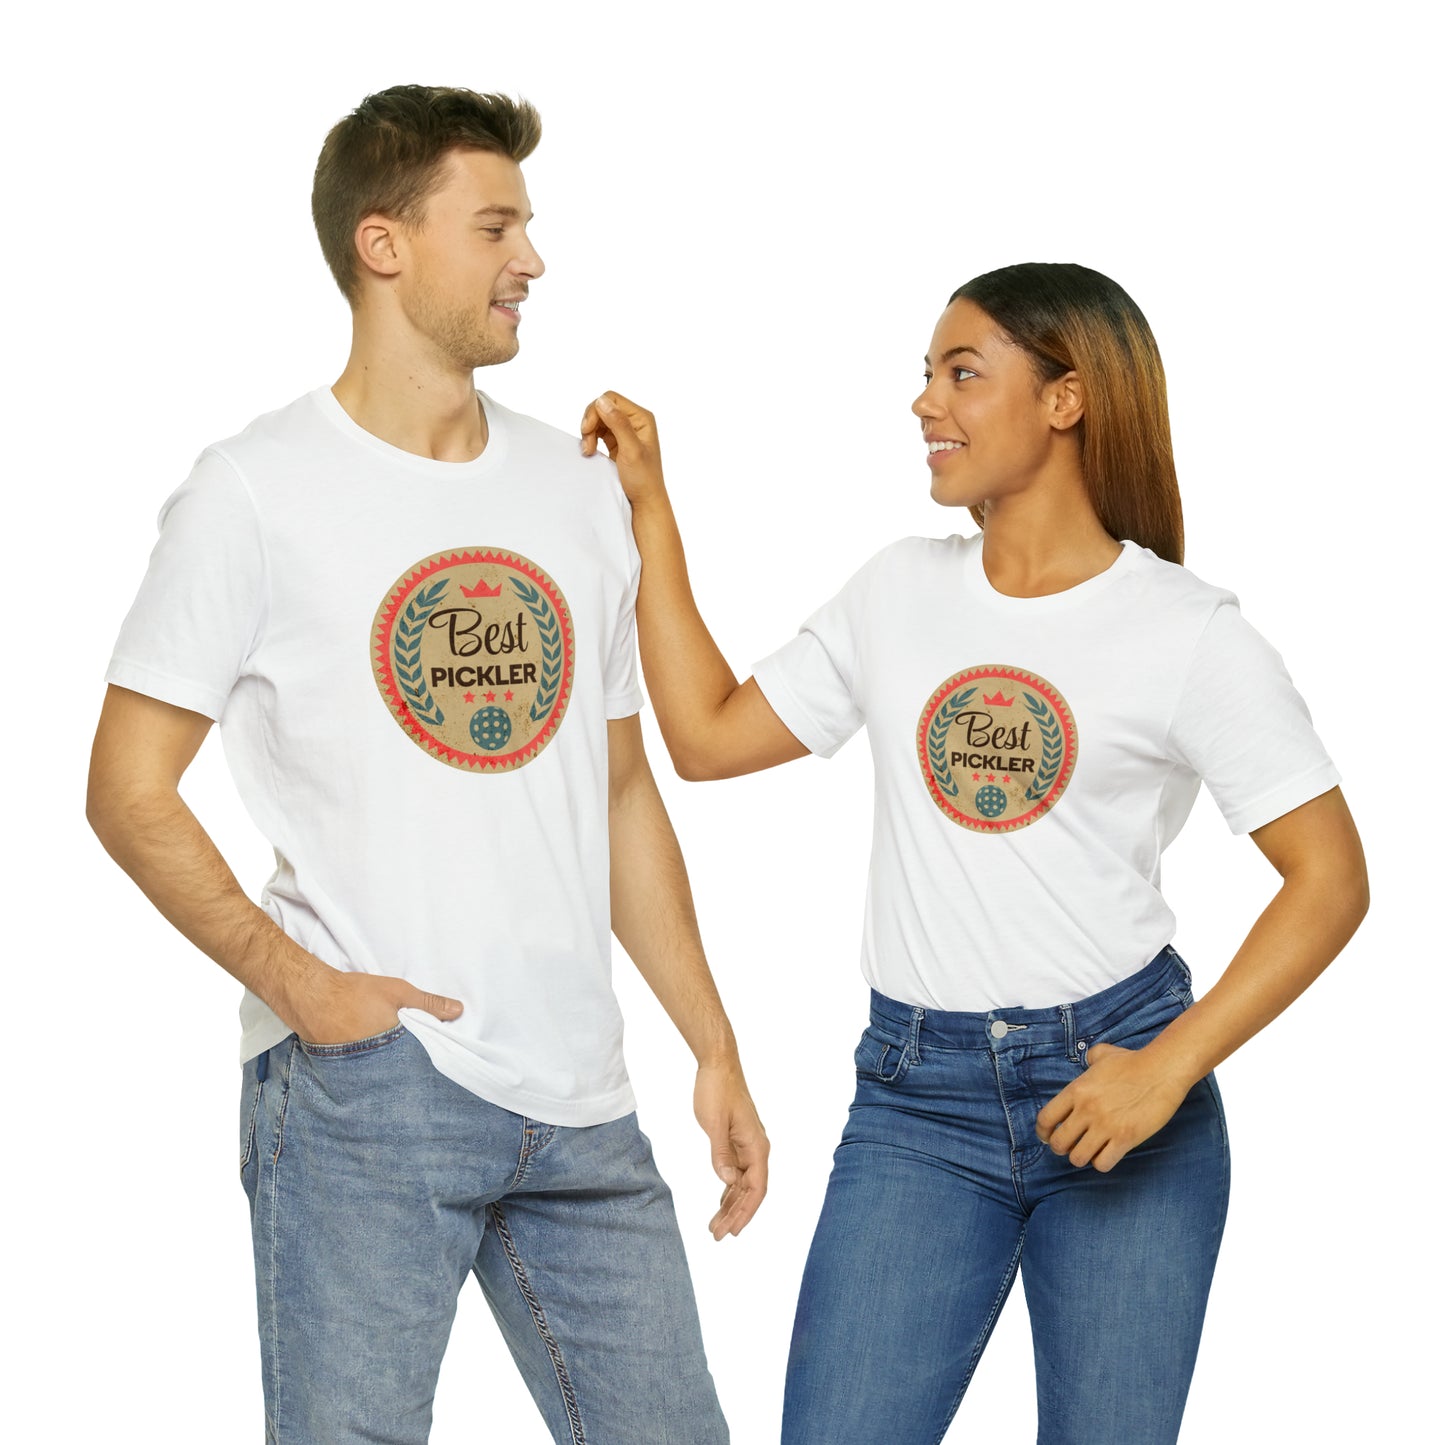 Best Pickler - Unisex Cotton T-Shirt for Pickleball Lovers